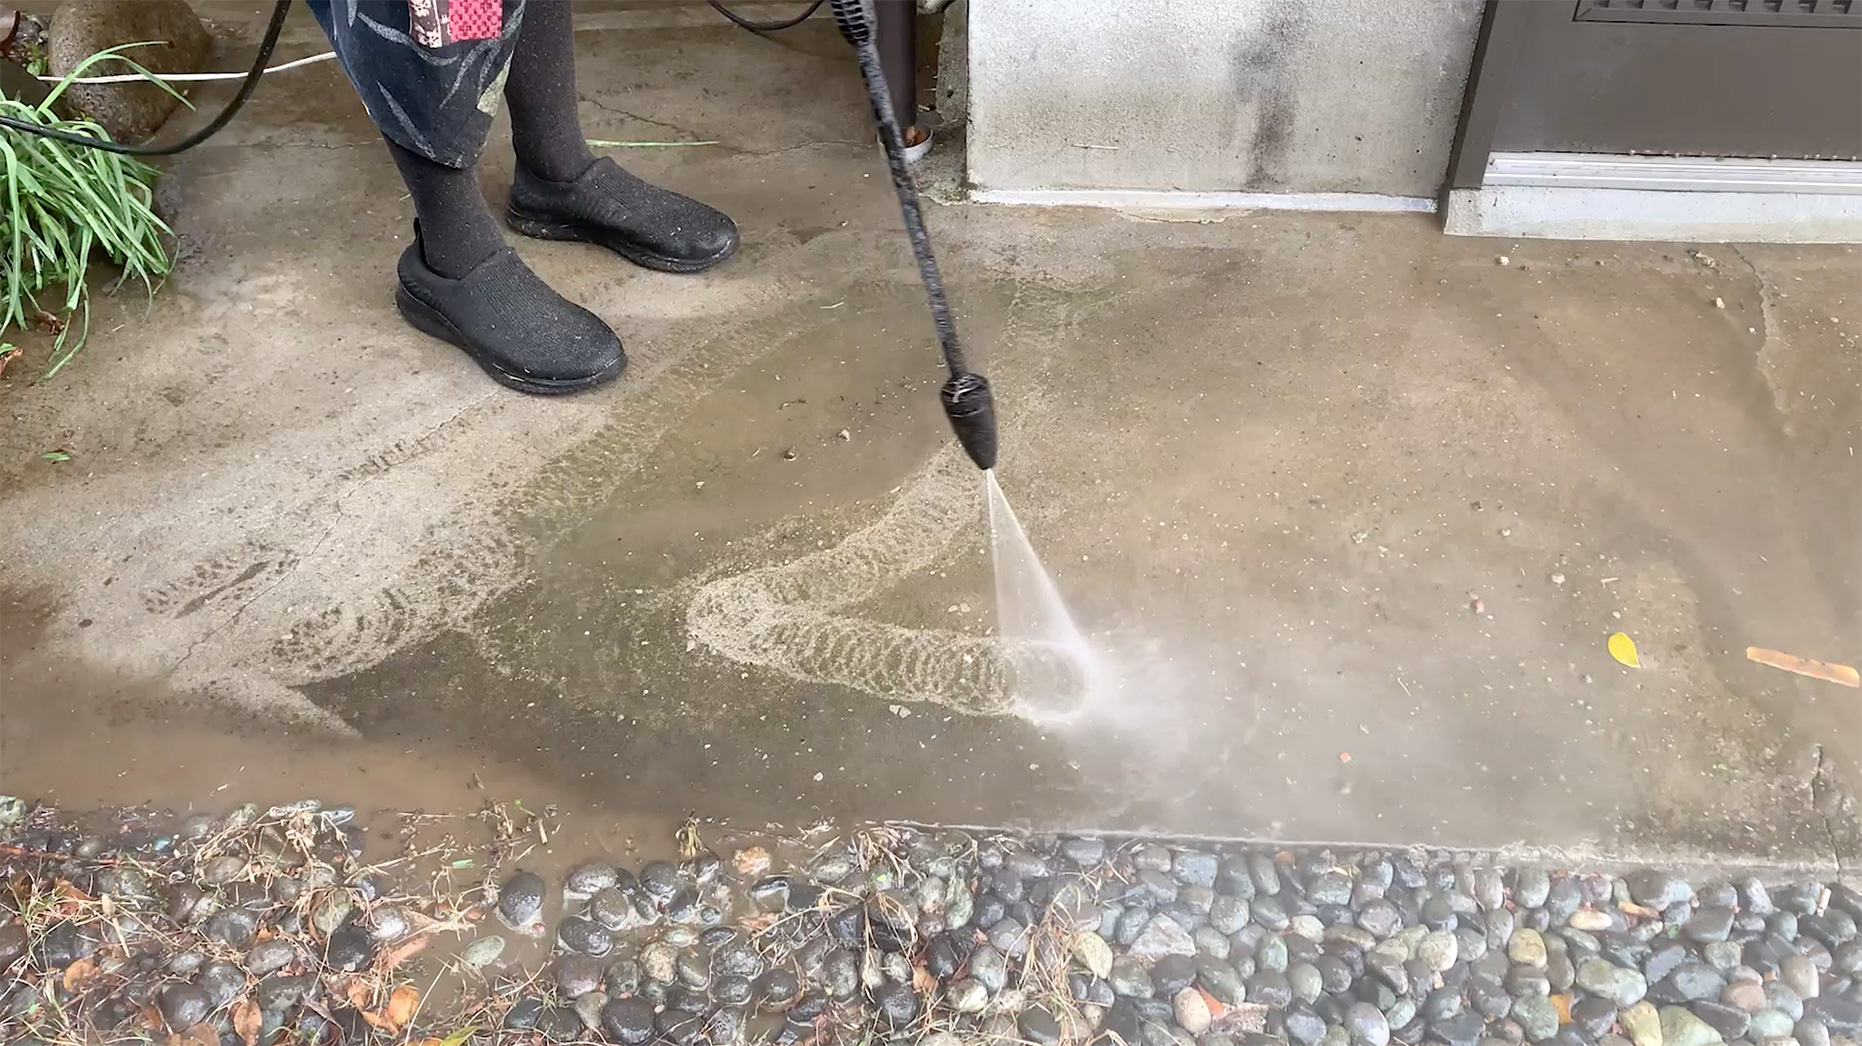 高圧洗浄機「ケルヒャーK3サイレント」でコンクリート洗浄している様子